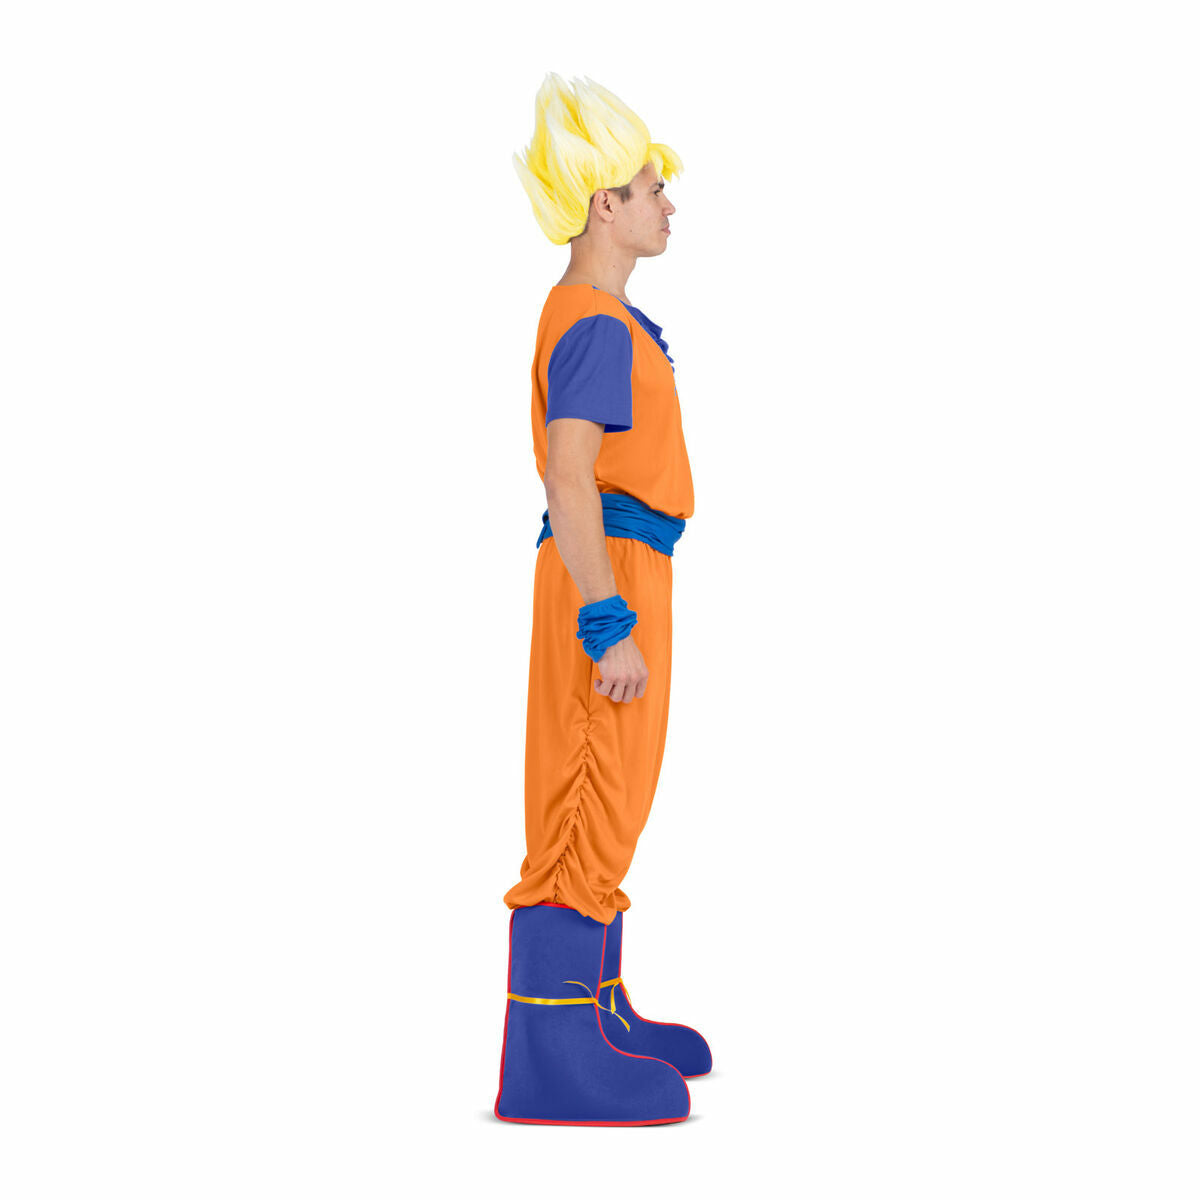 Costume per Adulti My Other Me Goku Dragon Ball Azzurro Arancio Taglia:M - Disponibile in 3-4 giorni lavorativi